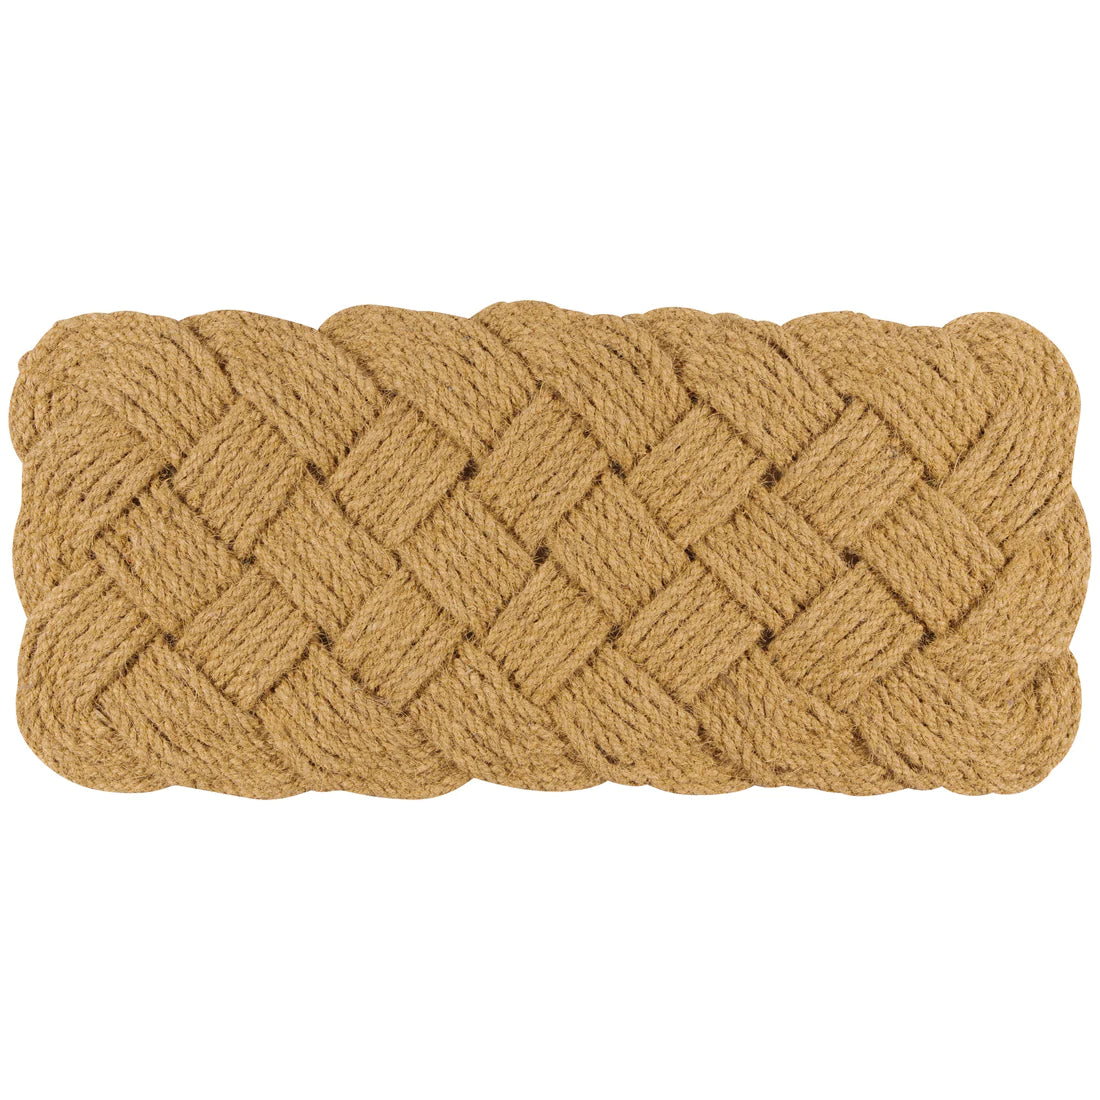 Rope Estate Coir Doormat